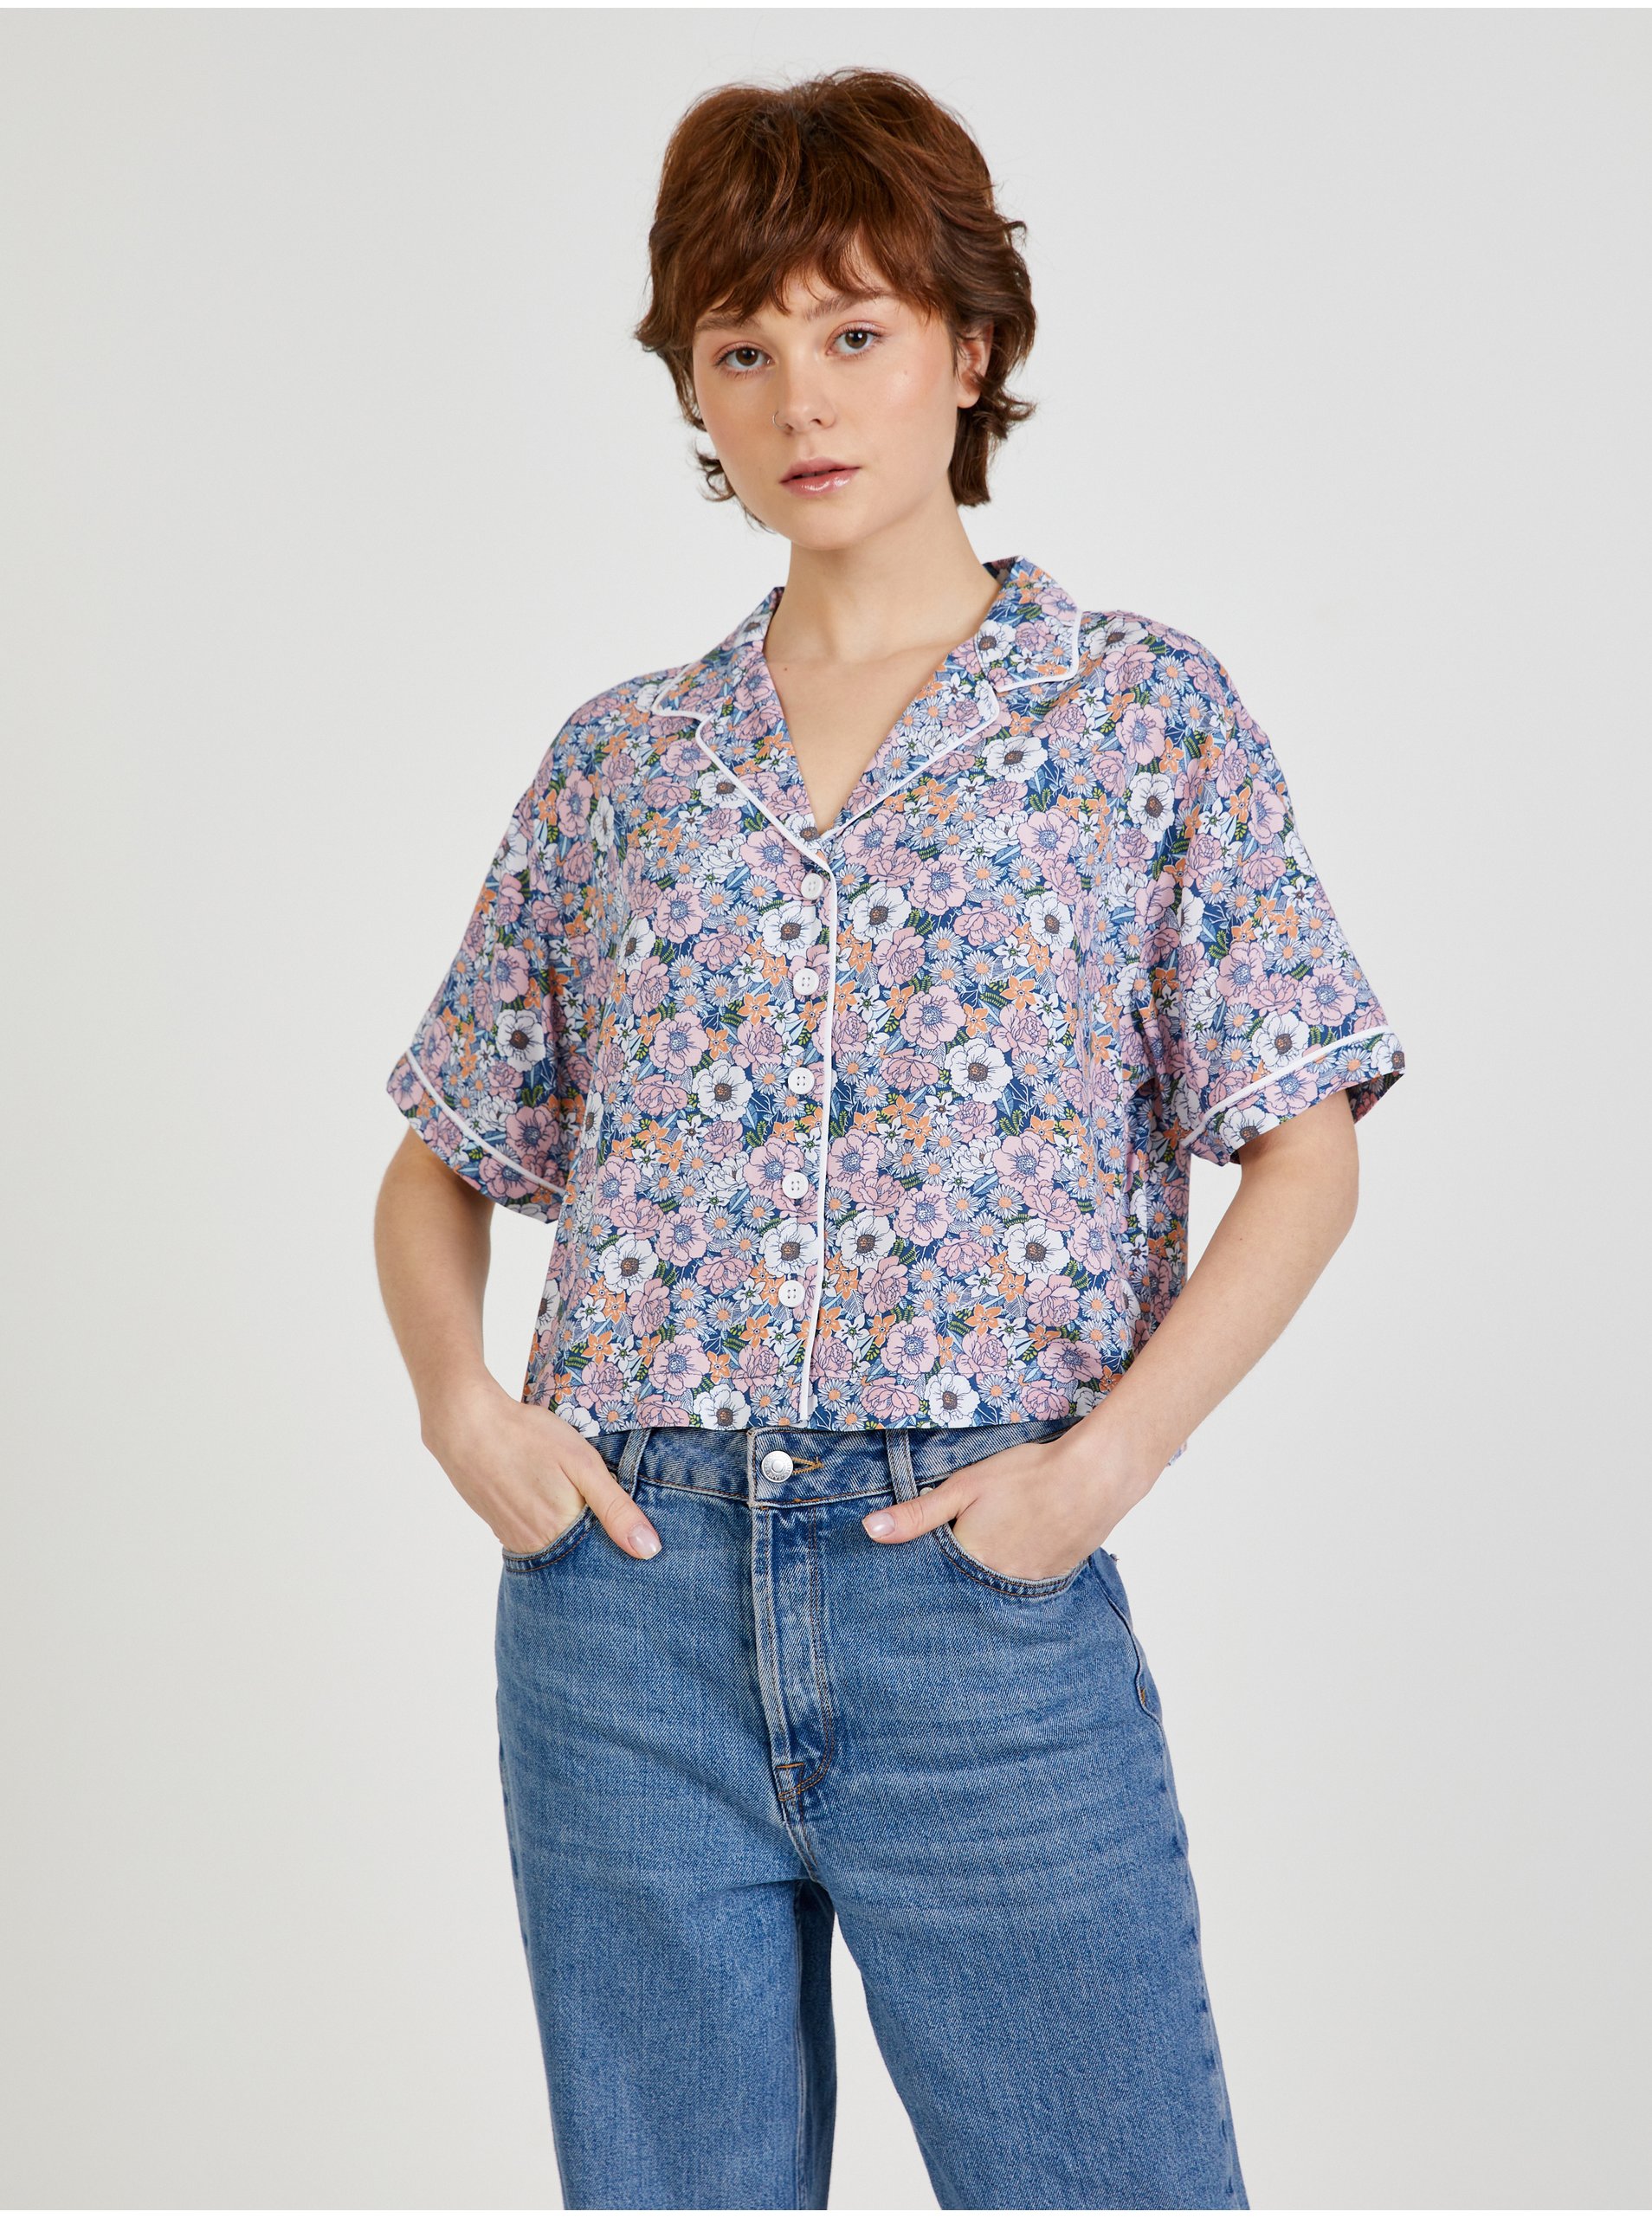 Levně Modro-růžová dámská vzorovaná košile VANS Retro Floral